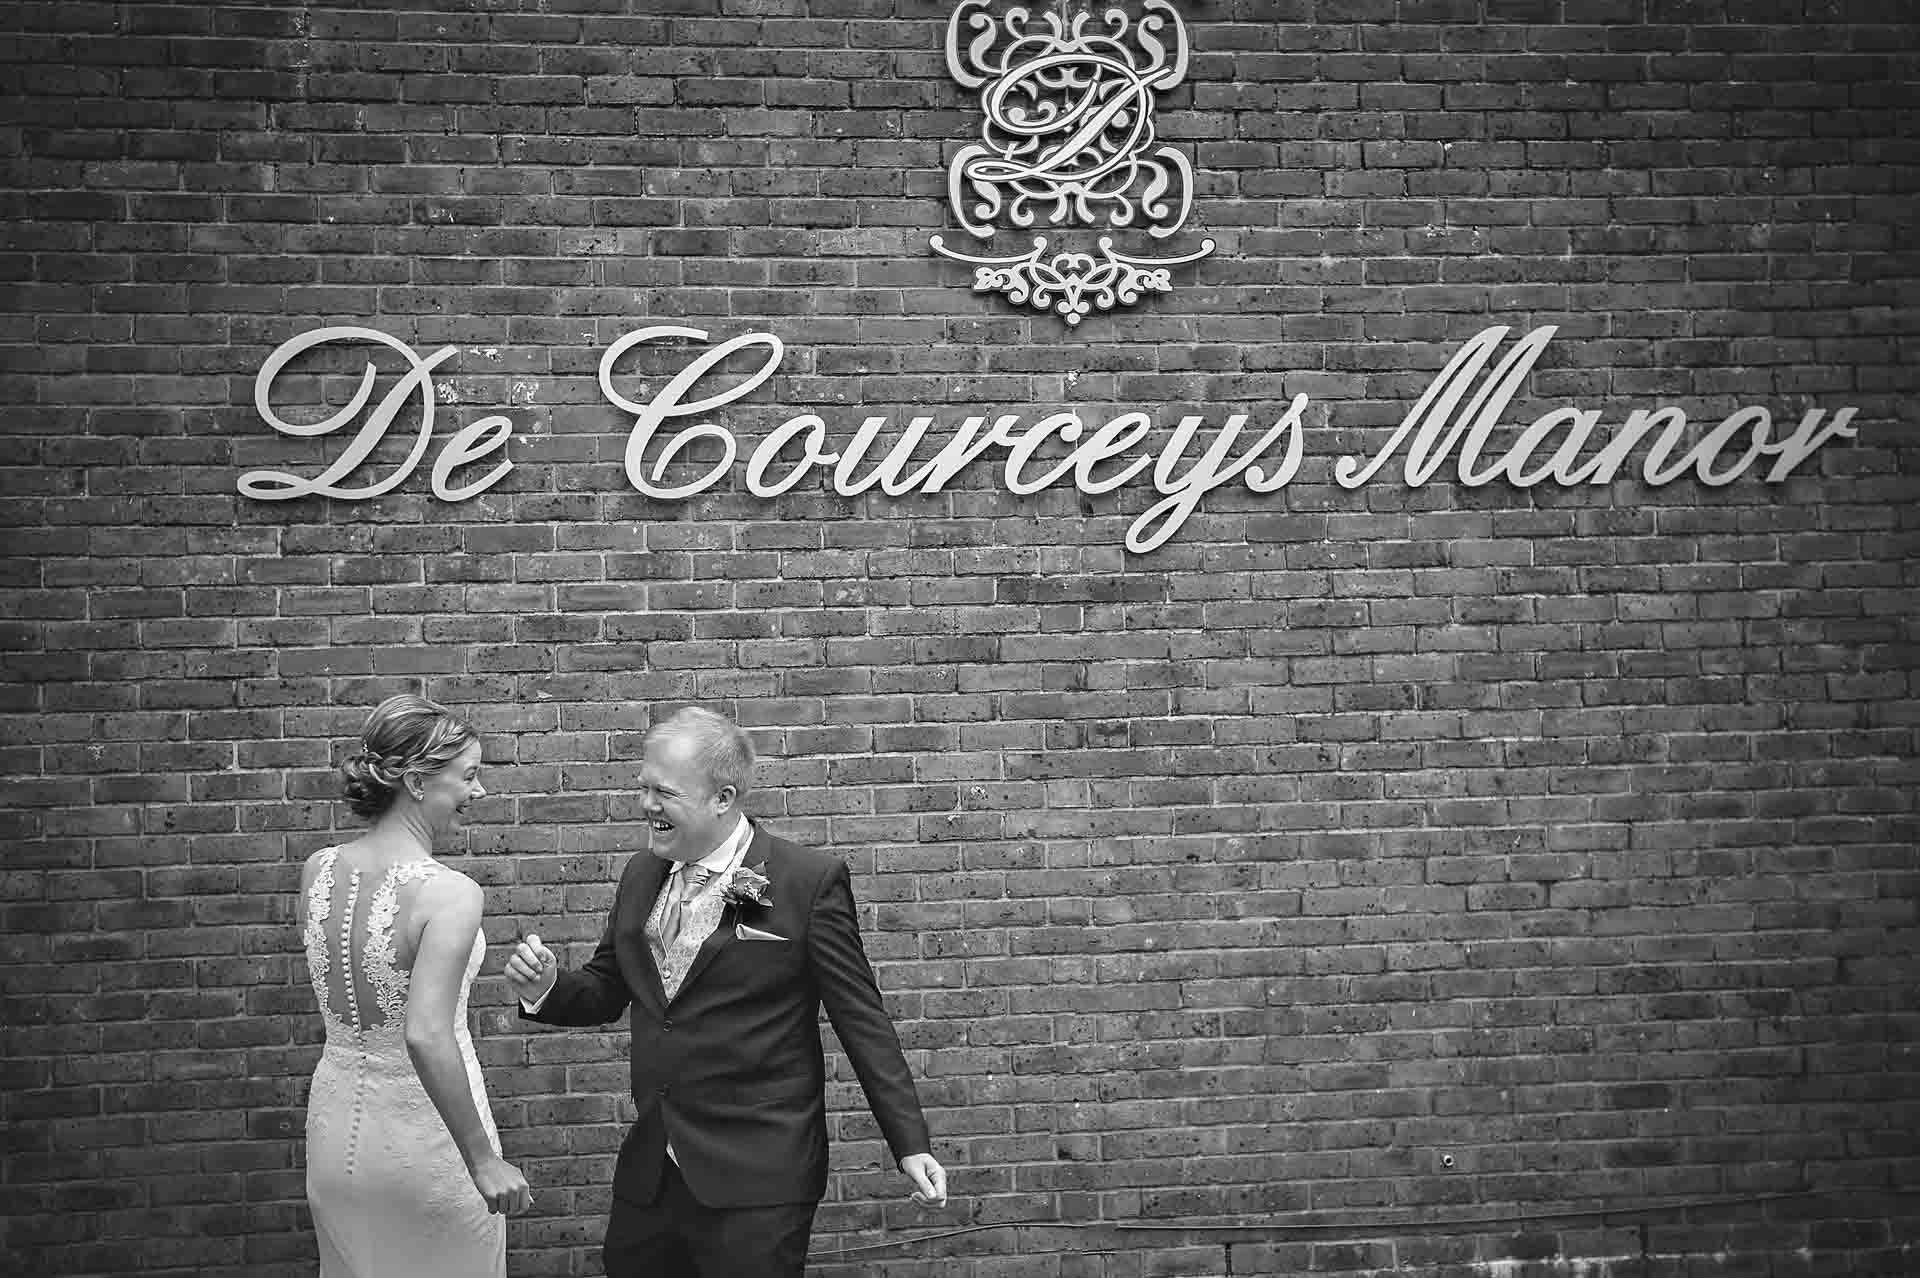 Bride and groom dancing under DeCourceys Manor venue sign